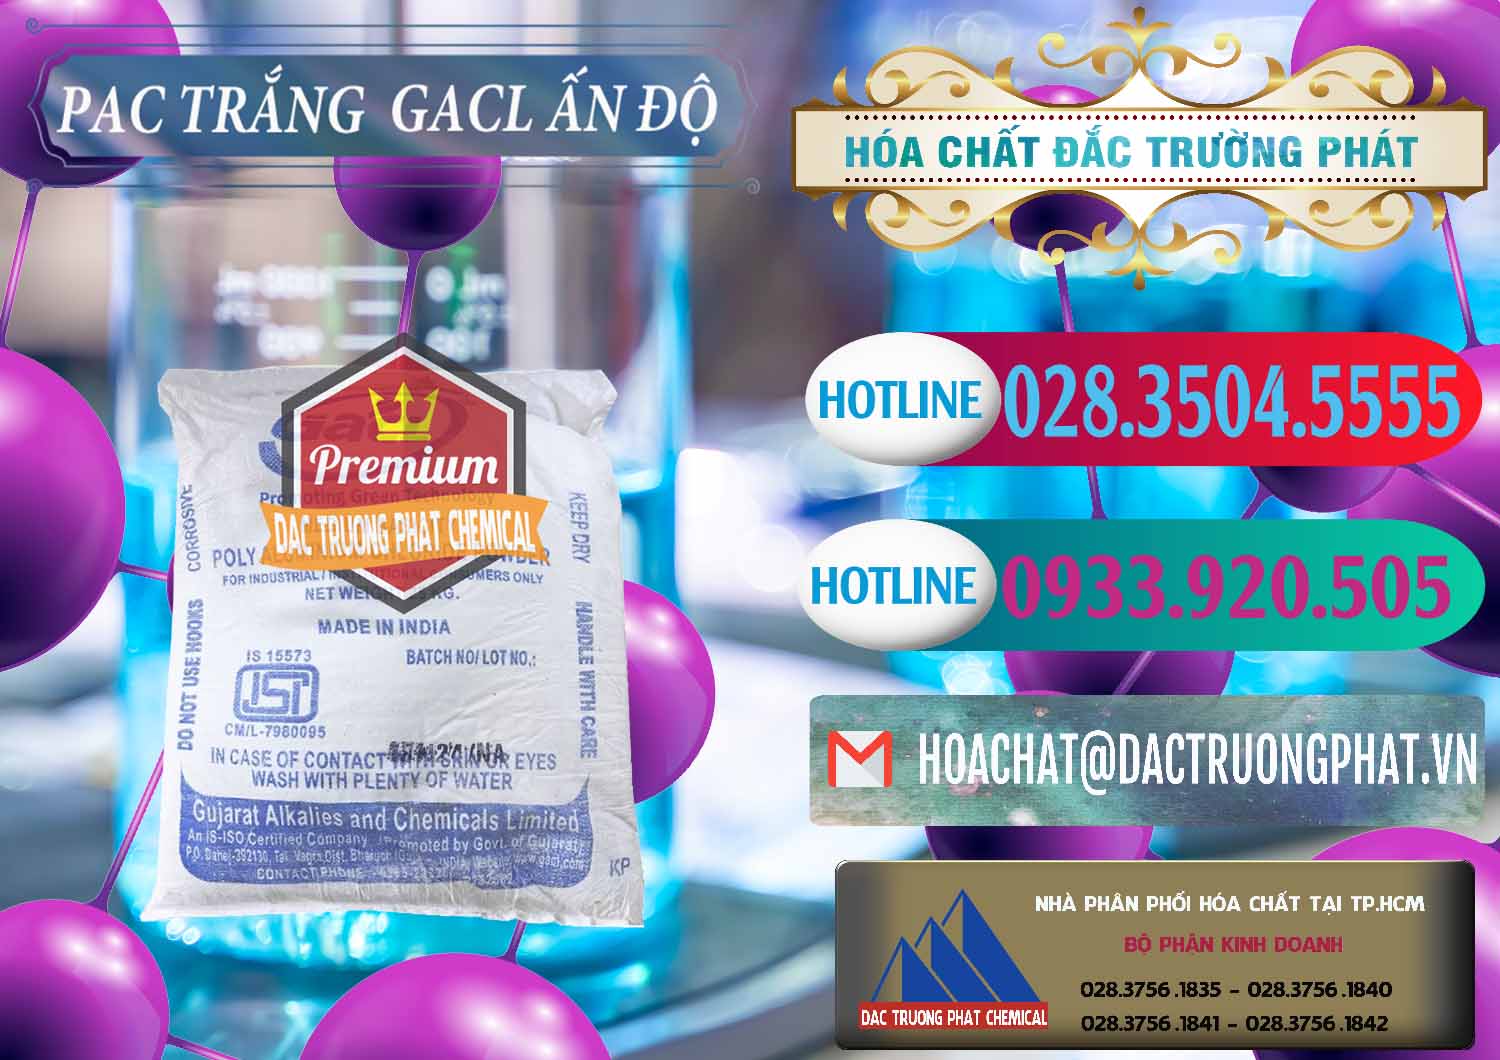 Đơn vị chuyên bán & cung cấp PAC - Polyaluminium Chloride Trắng GACL Ấn Độ India - 0266 - Nơi cung cấp & kinh doanh hóa chất tại TP.HCM - truongphat.vn